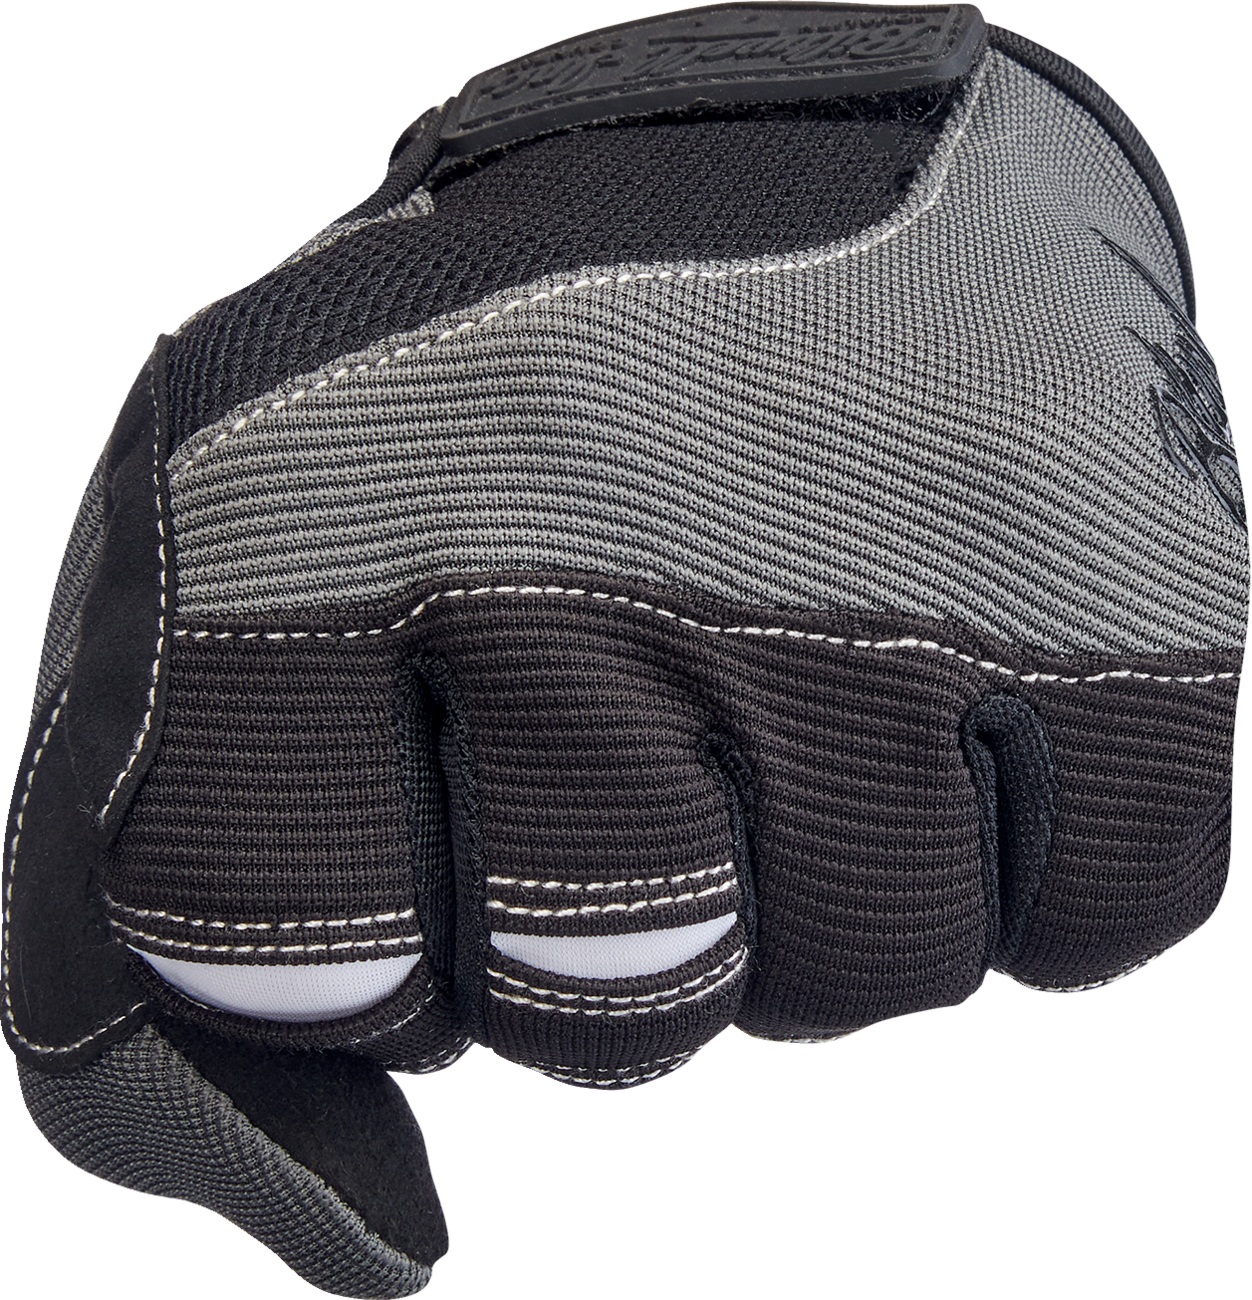 BILTWELL Moto Gloves - Gray/Black - XS 1501-1101-001